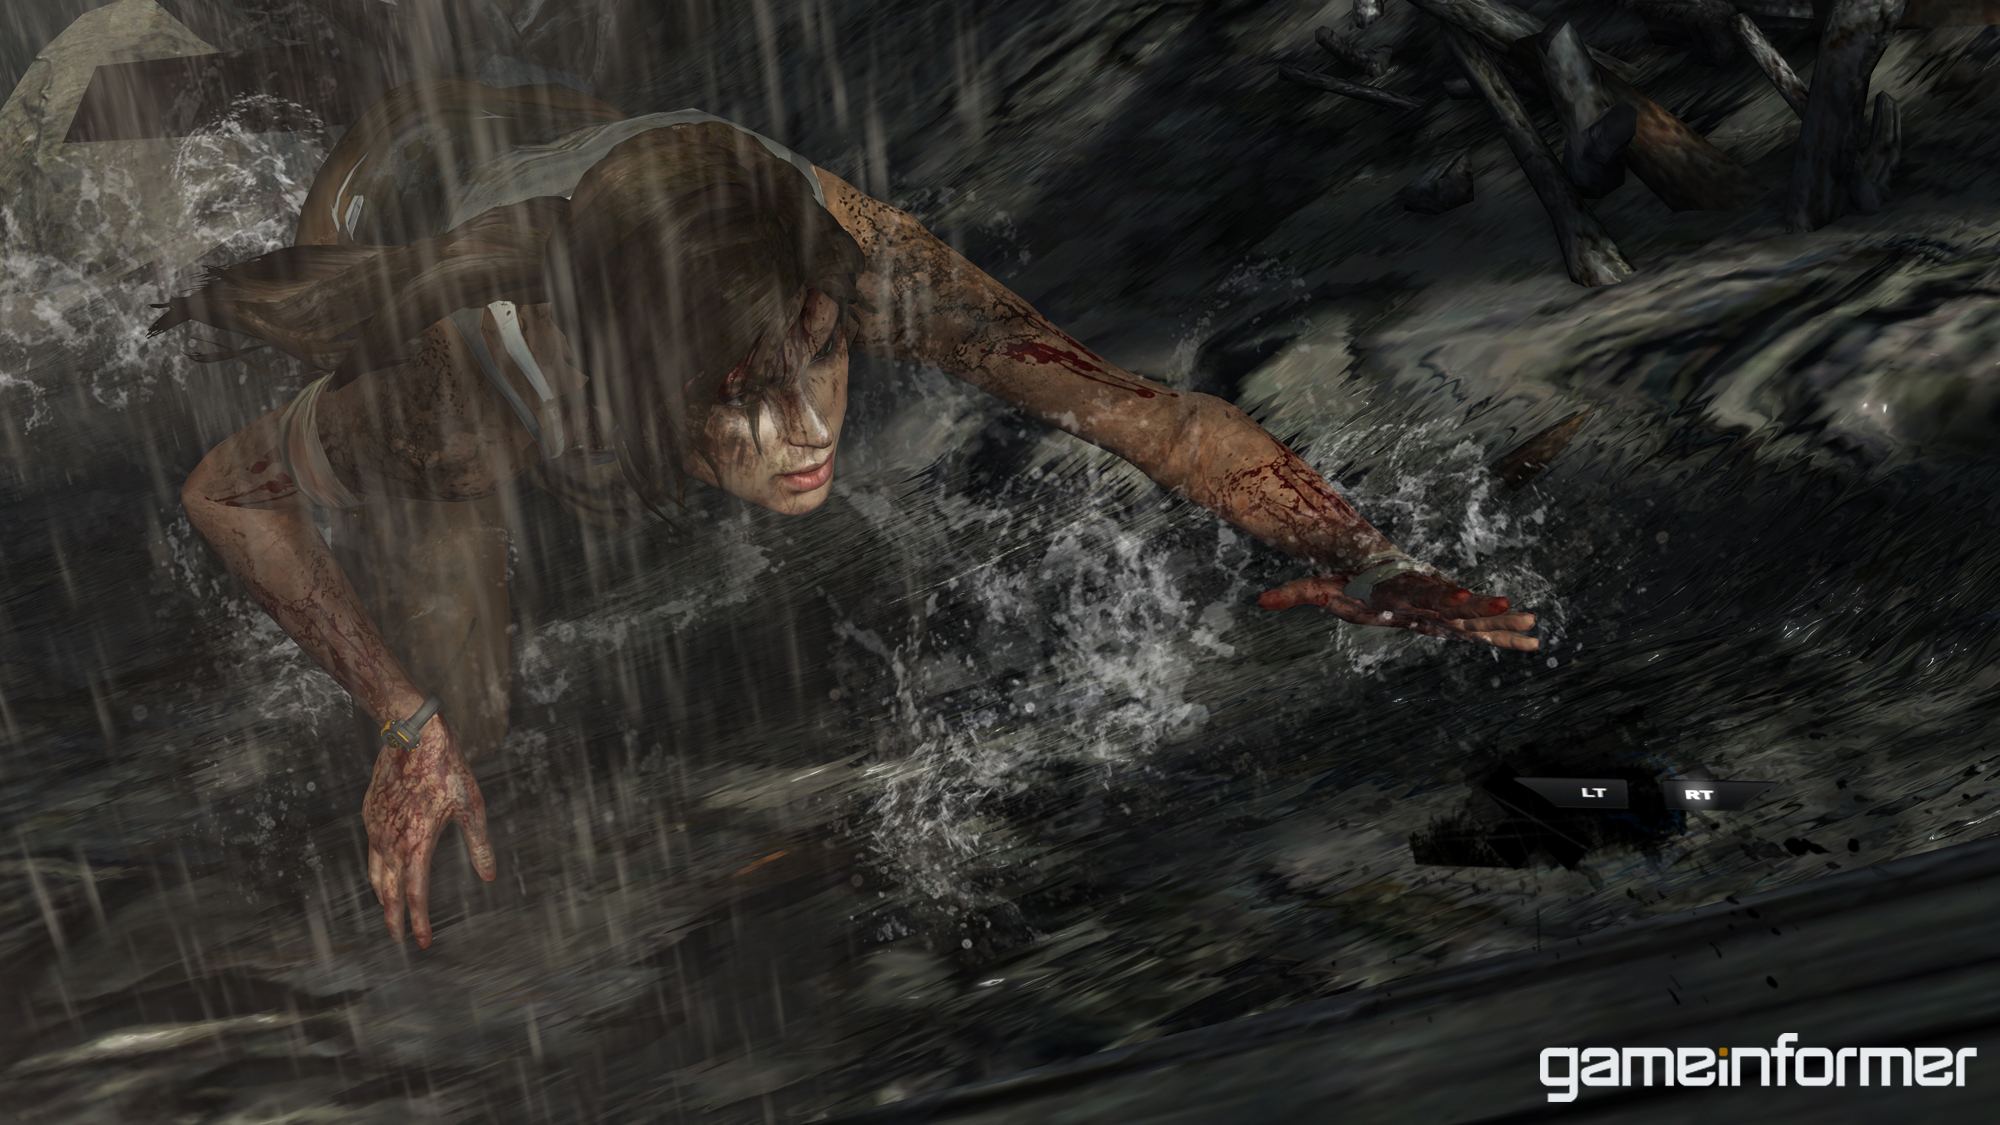 Immagine pubblicata in relazione al seguente contenuto: On line i primi screenshots di Tomb Raider next generation | Nome immagine: news14437_4.jpg